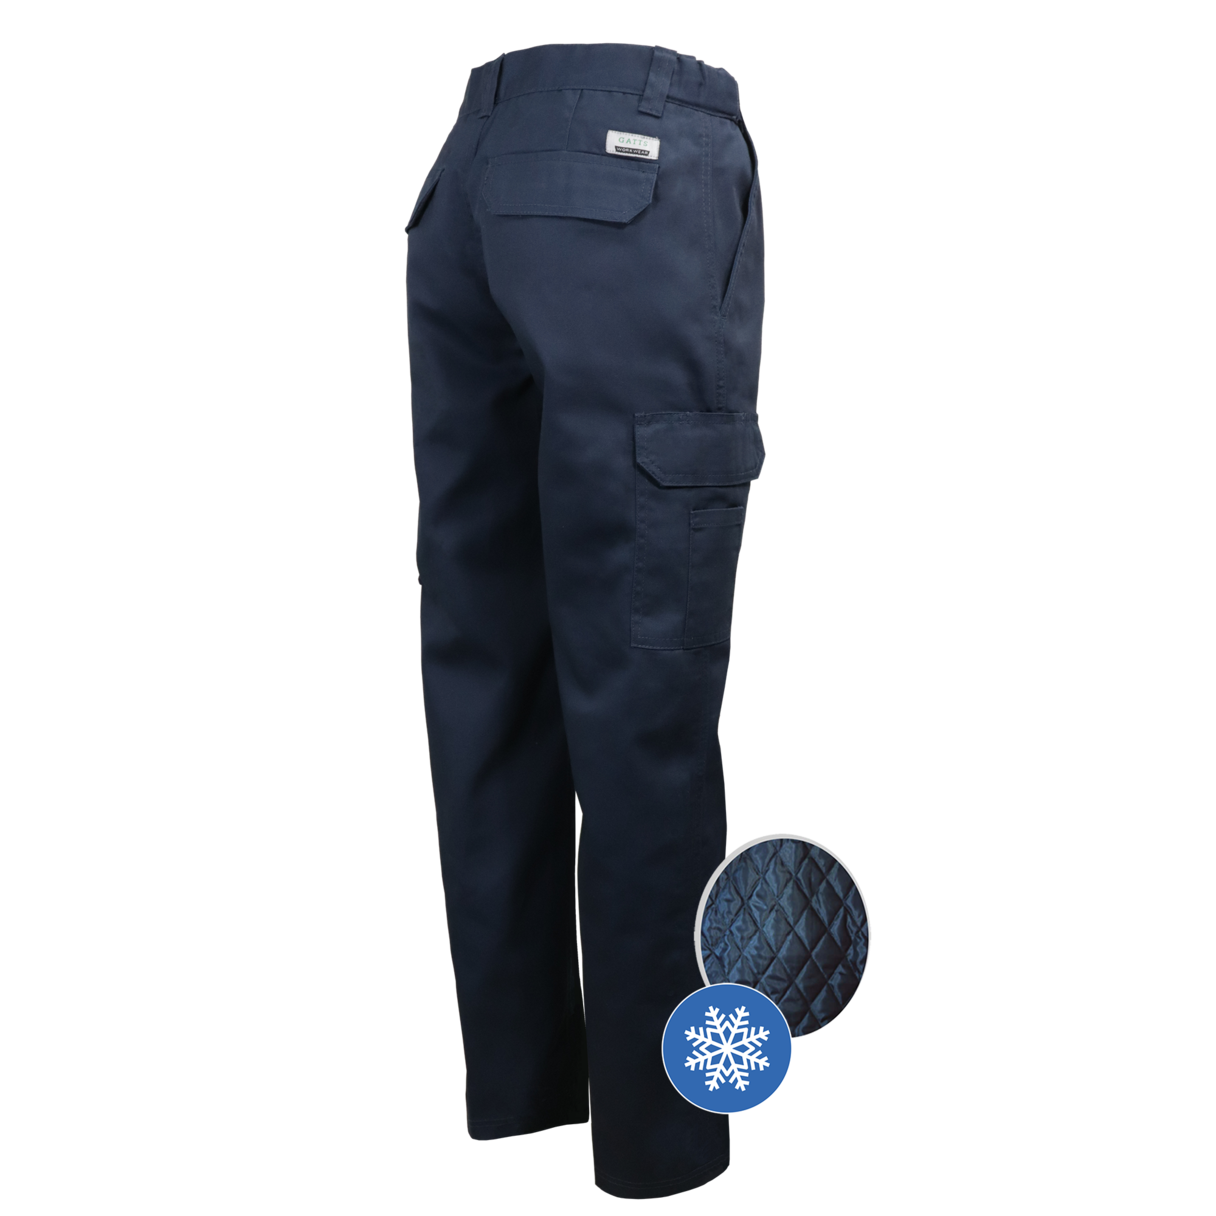 Pantalon de travail pour homme style cargo Gatts #MRB-887 dos marine